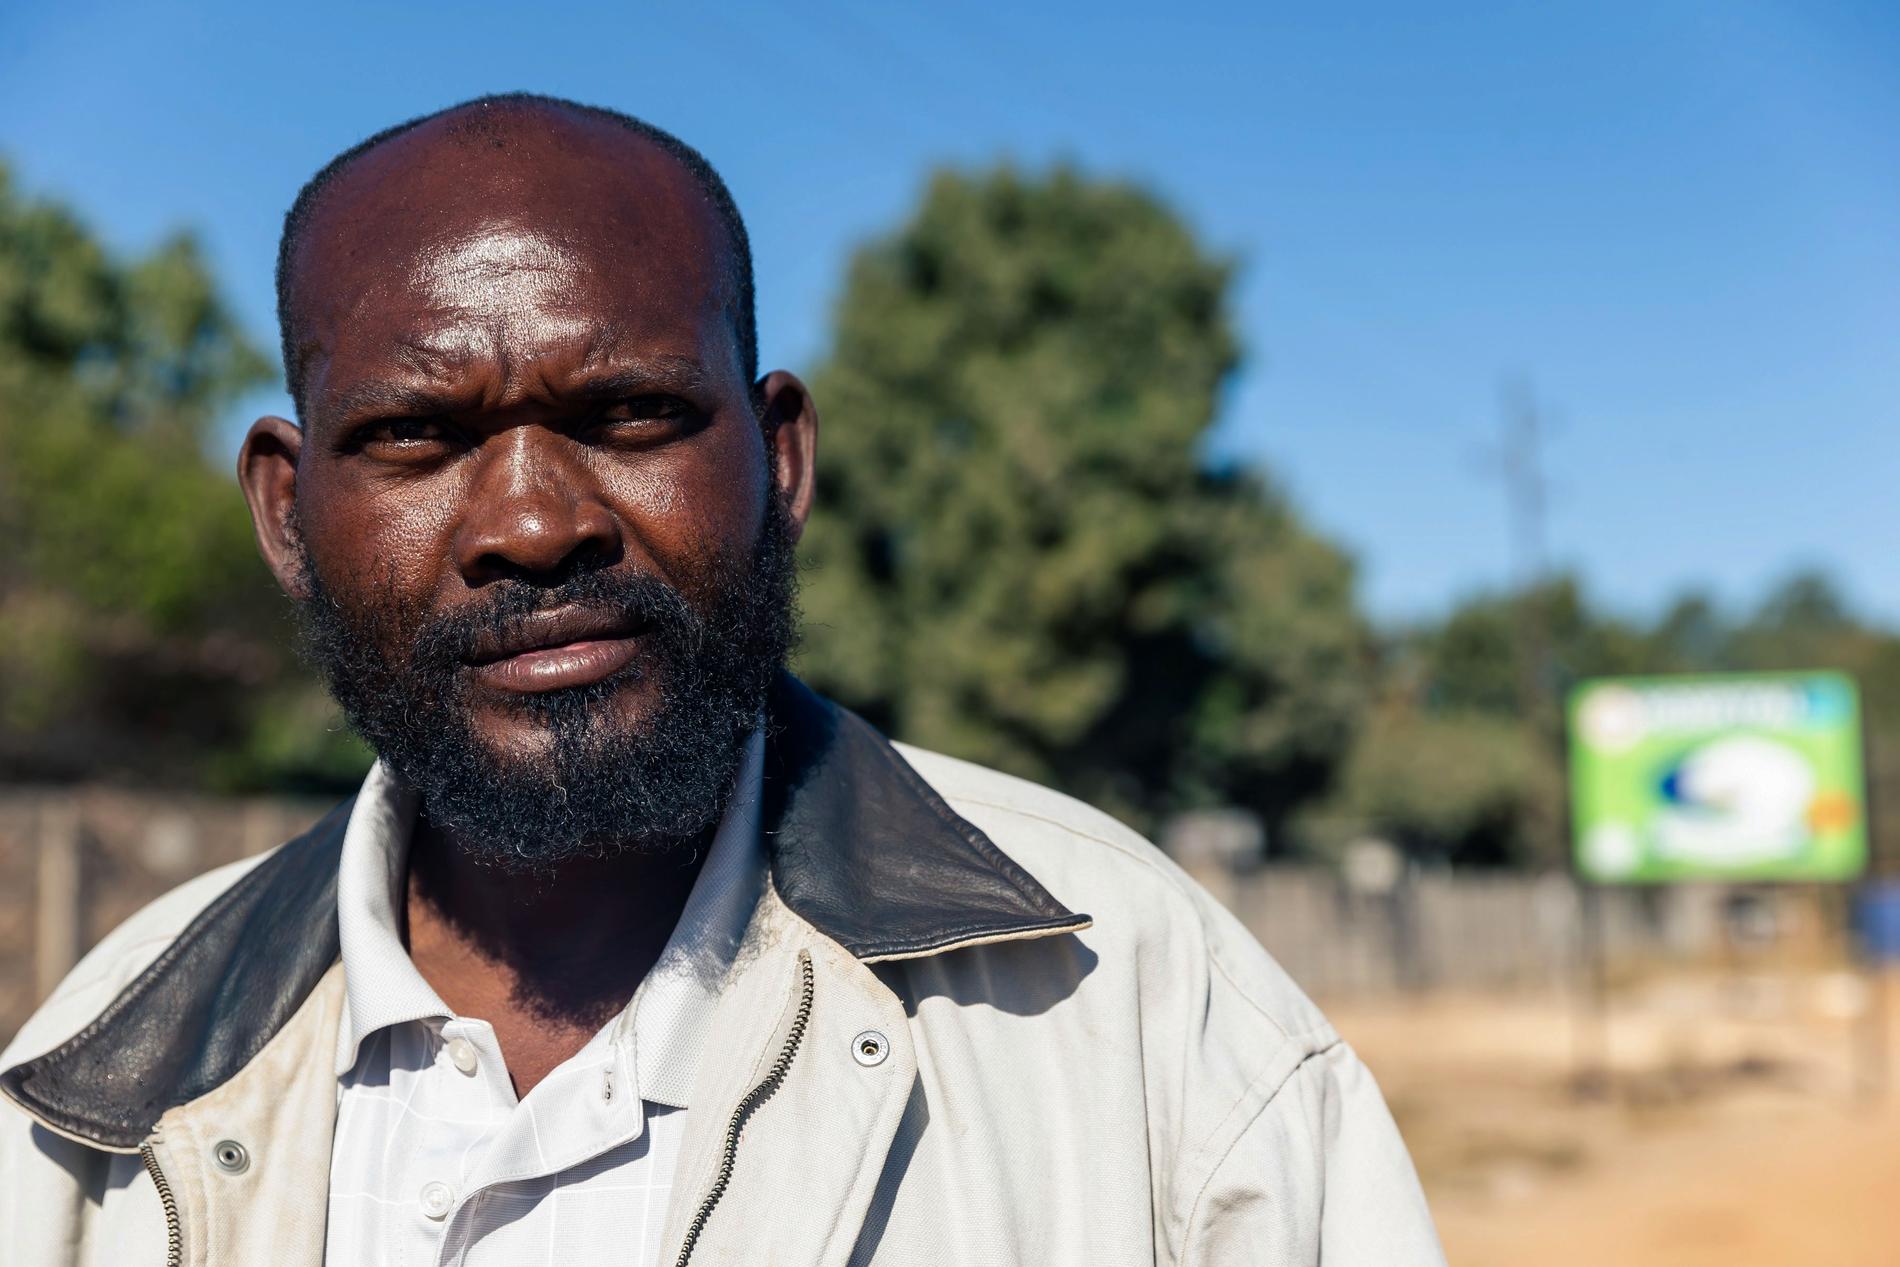 "Det är patetiskt", säger Saratiel Marandani, en 49-årig gatuförsäljare, som själv tvingades köpa det förband som hans mor som ligger på ett sjukhus i Zimbabwe måste ha.